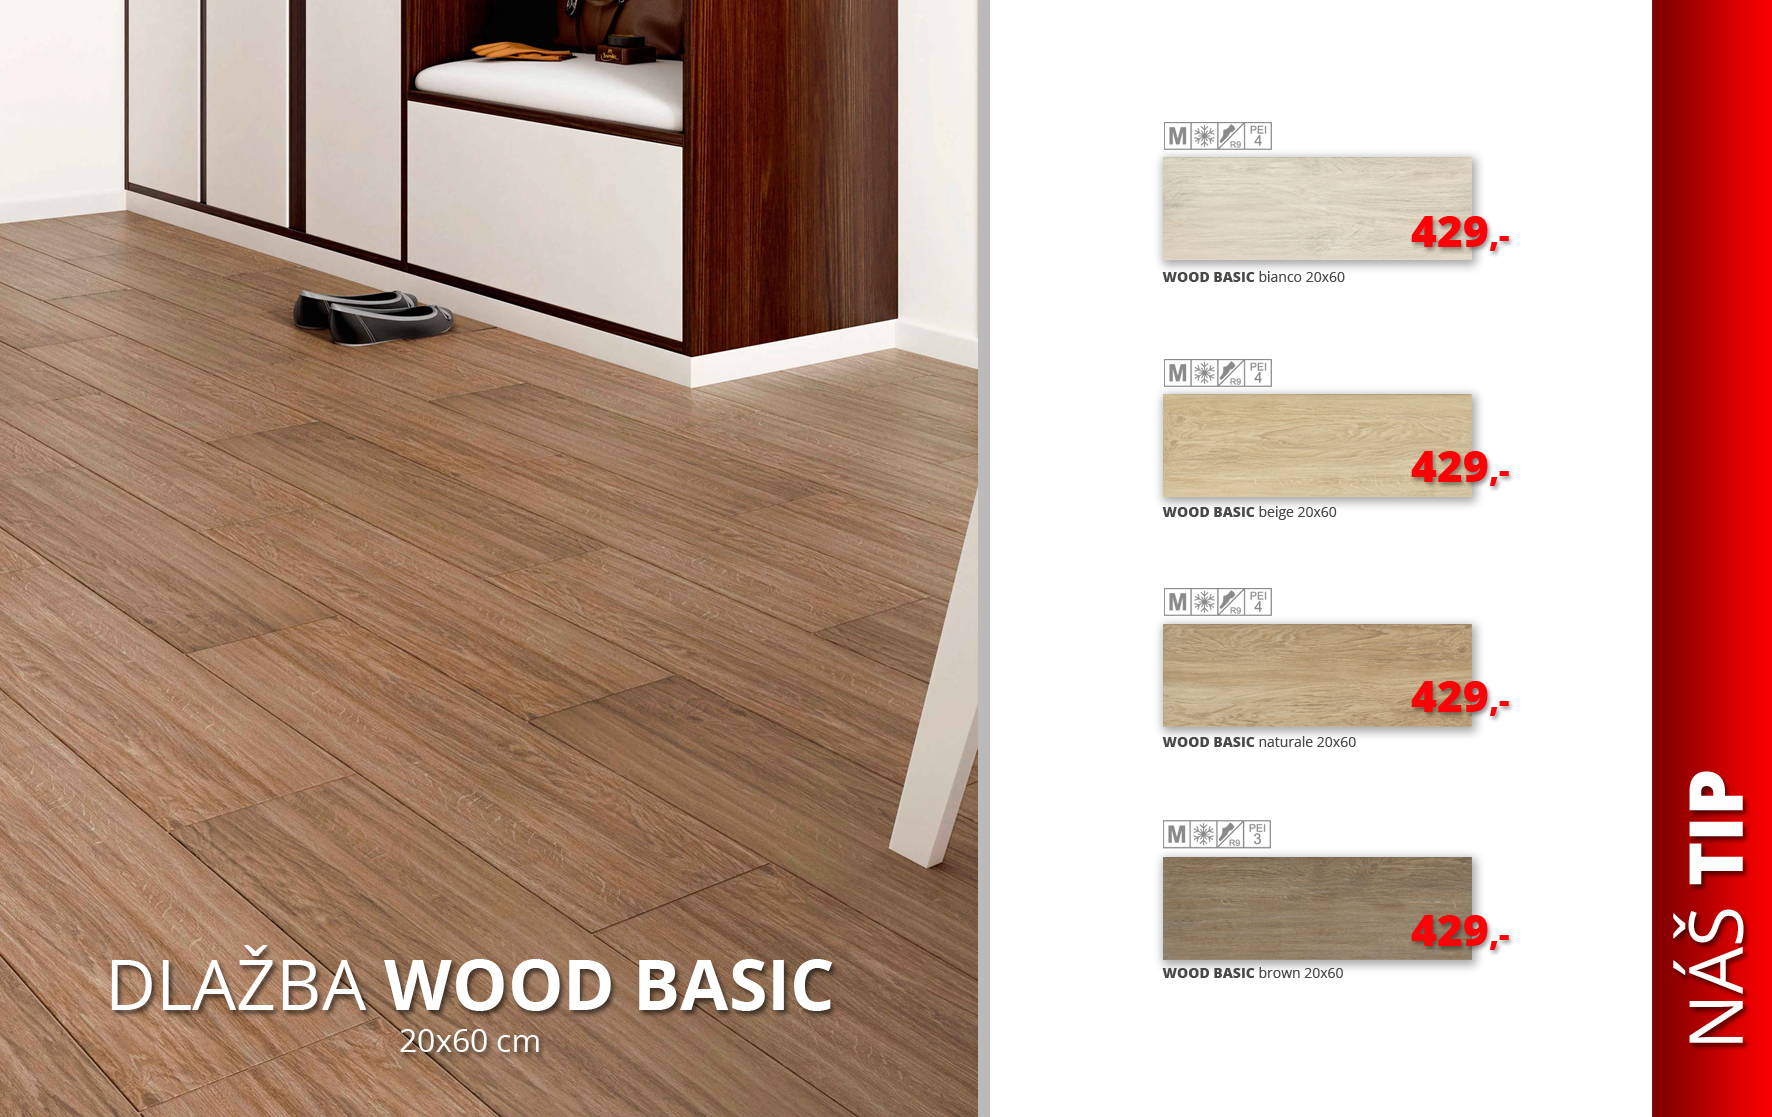 Wood Basic